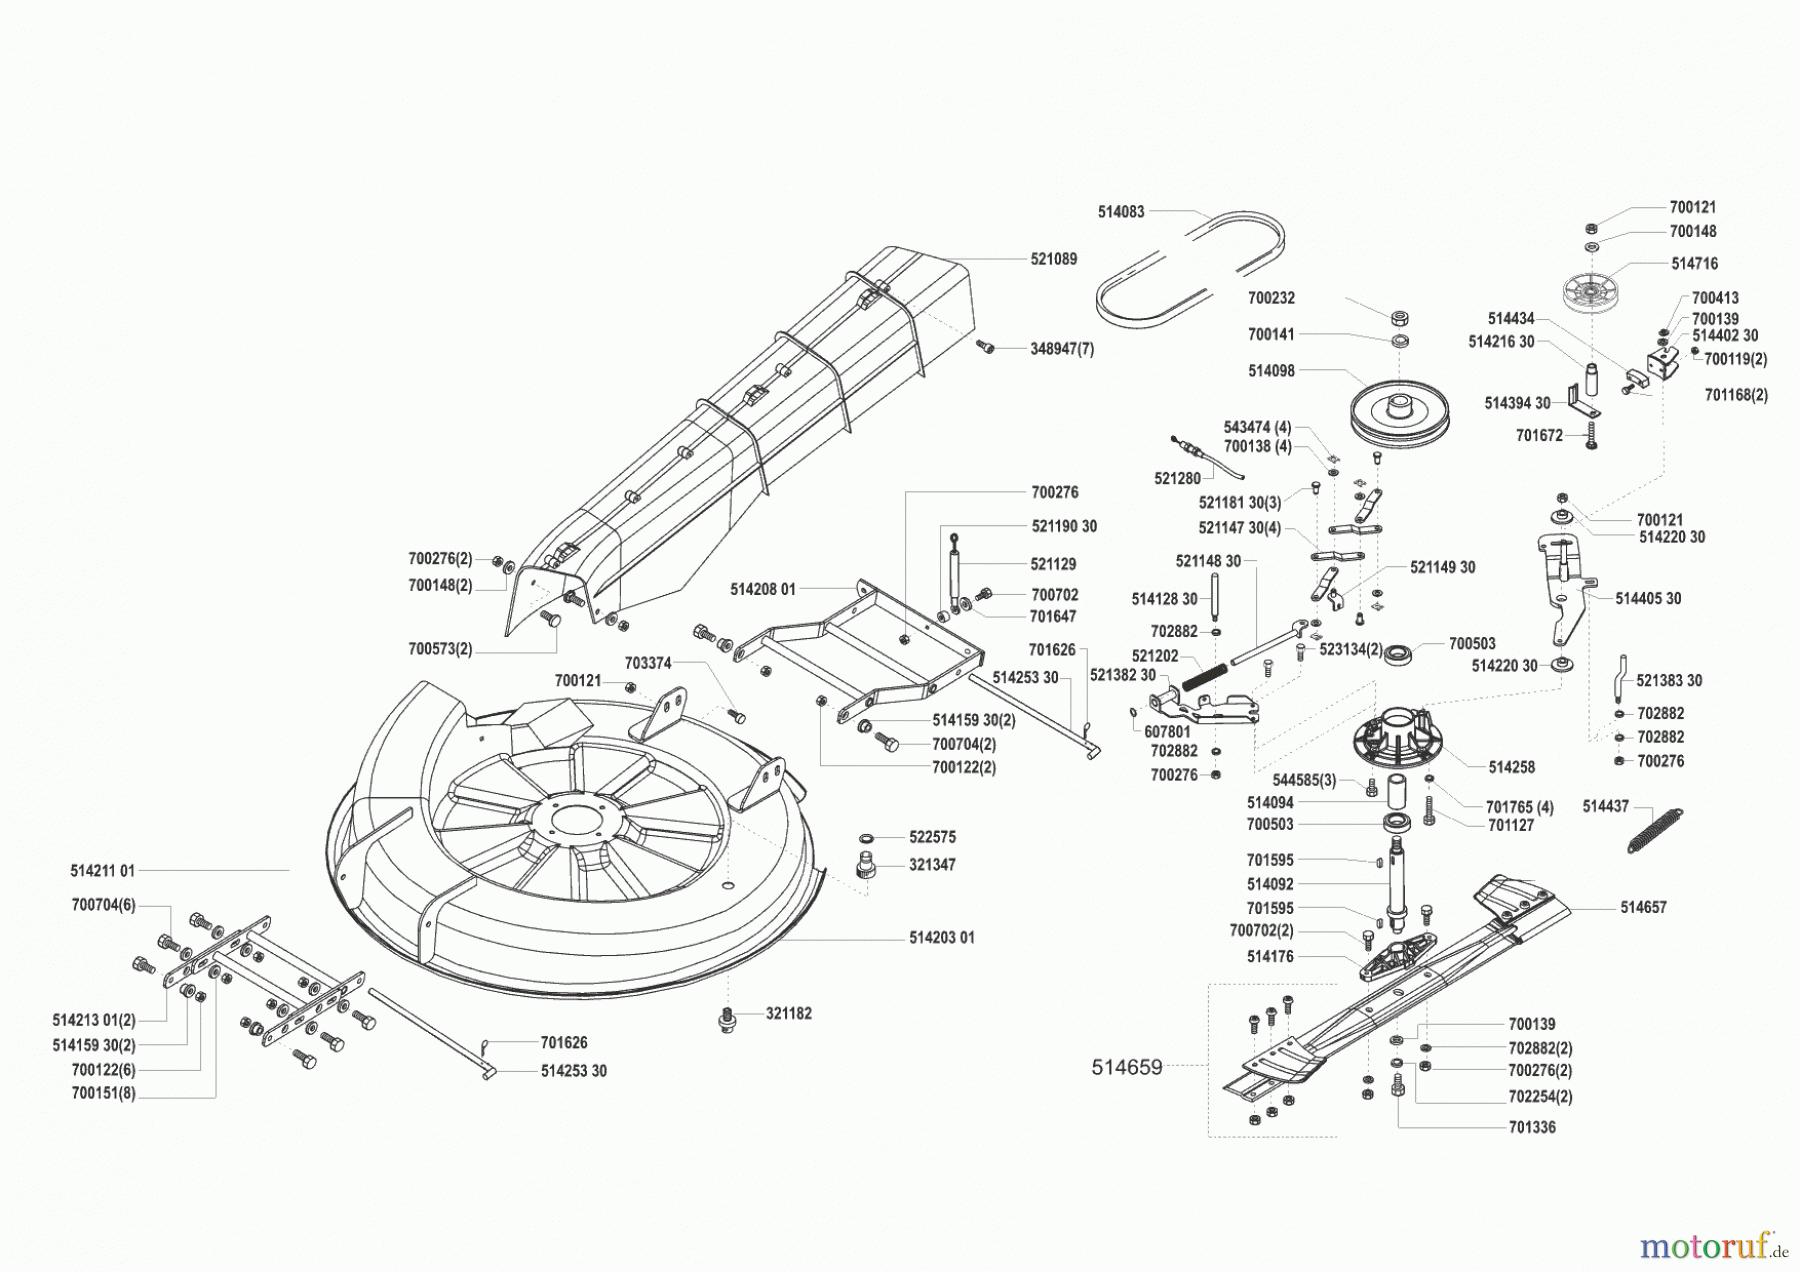  GHD Gartentechnik Rasentraktor T 10 vor 01/2001 Seite 5